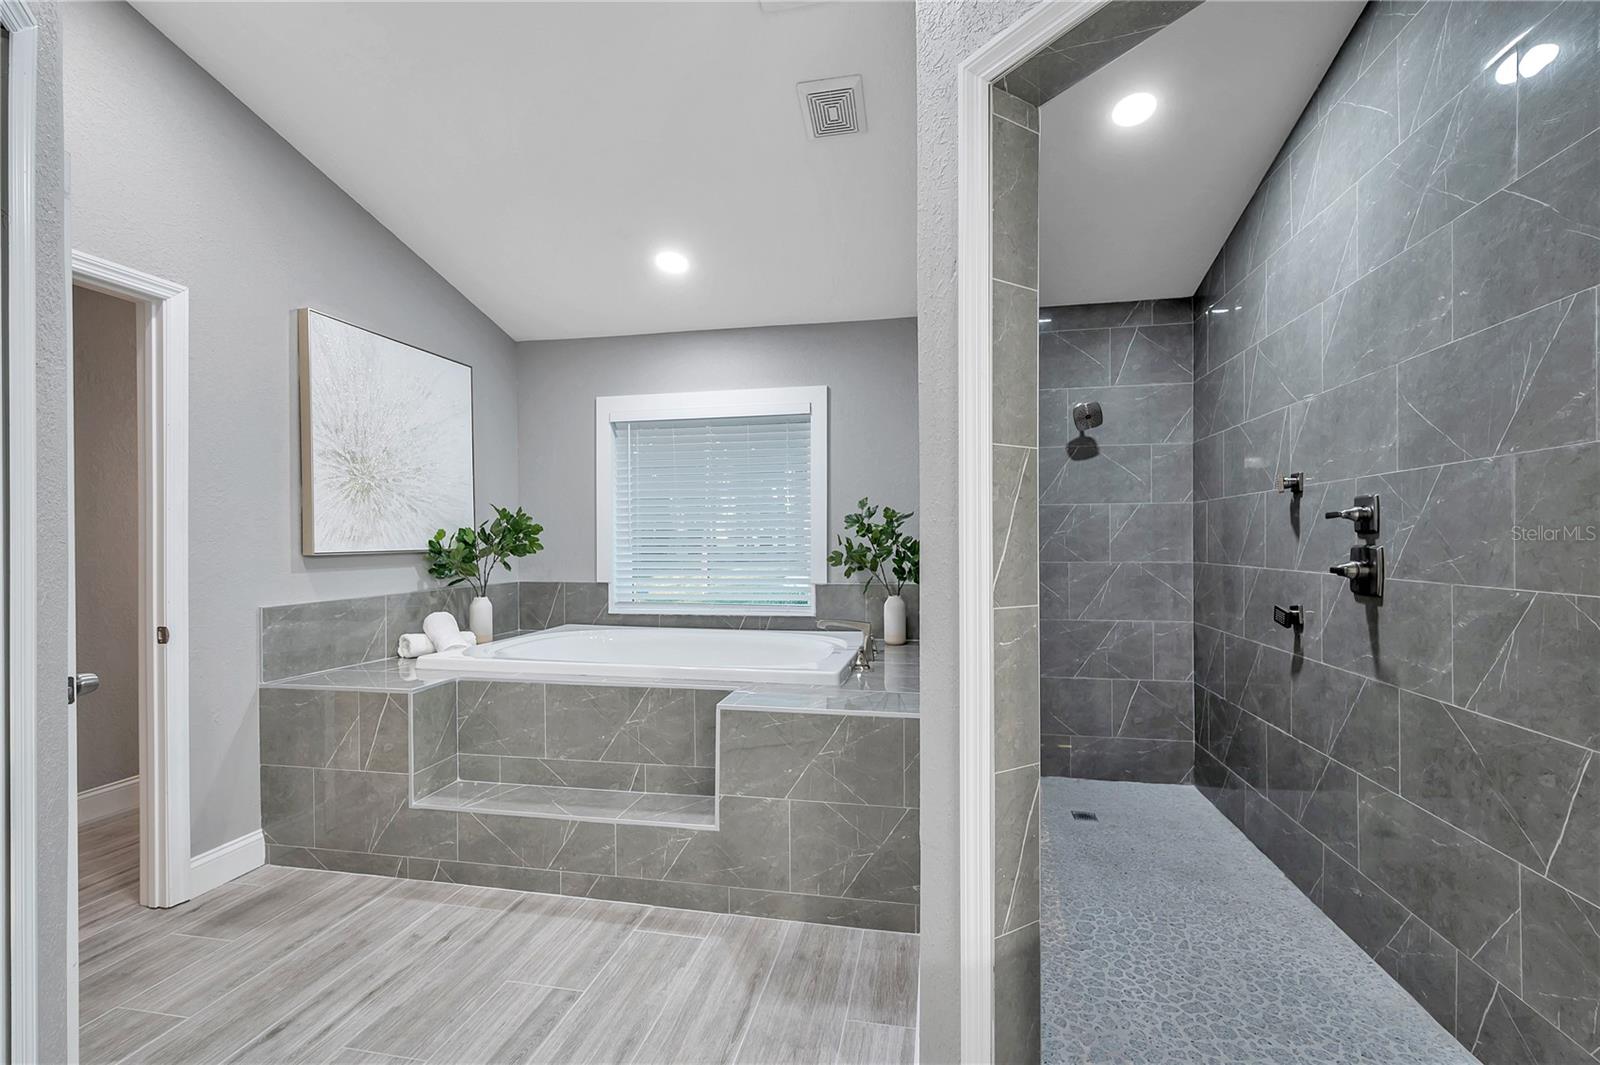 Garden tub & floor-to-ceiling tiled shower.